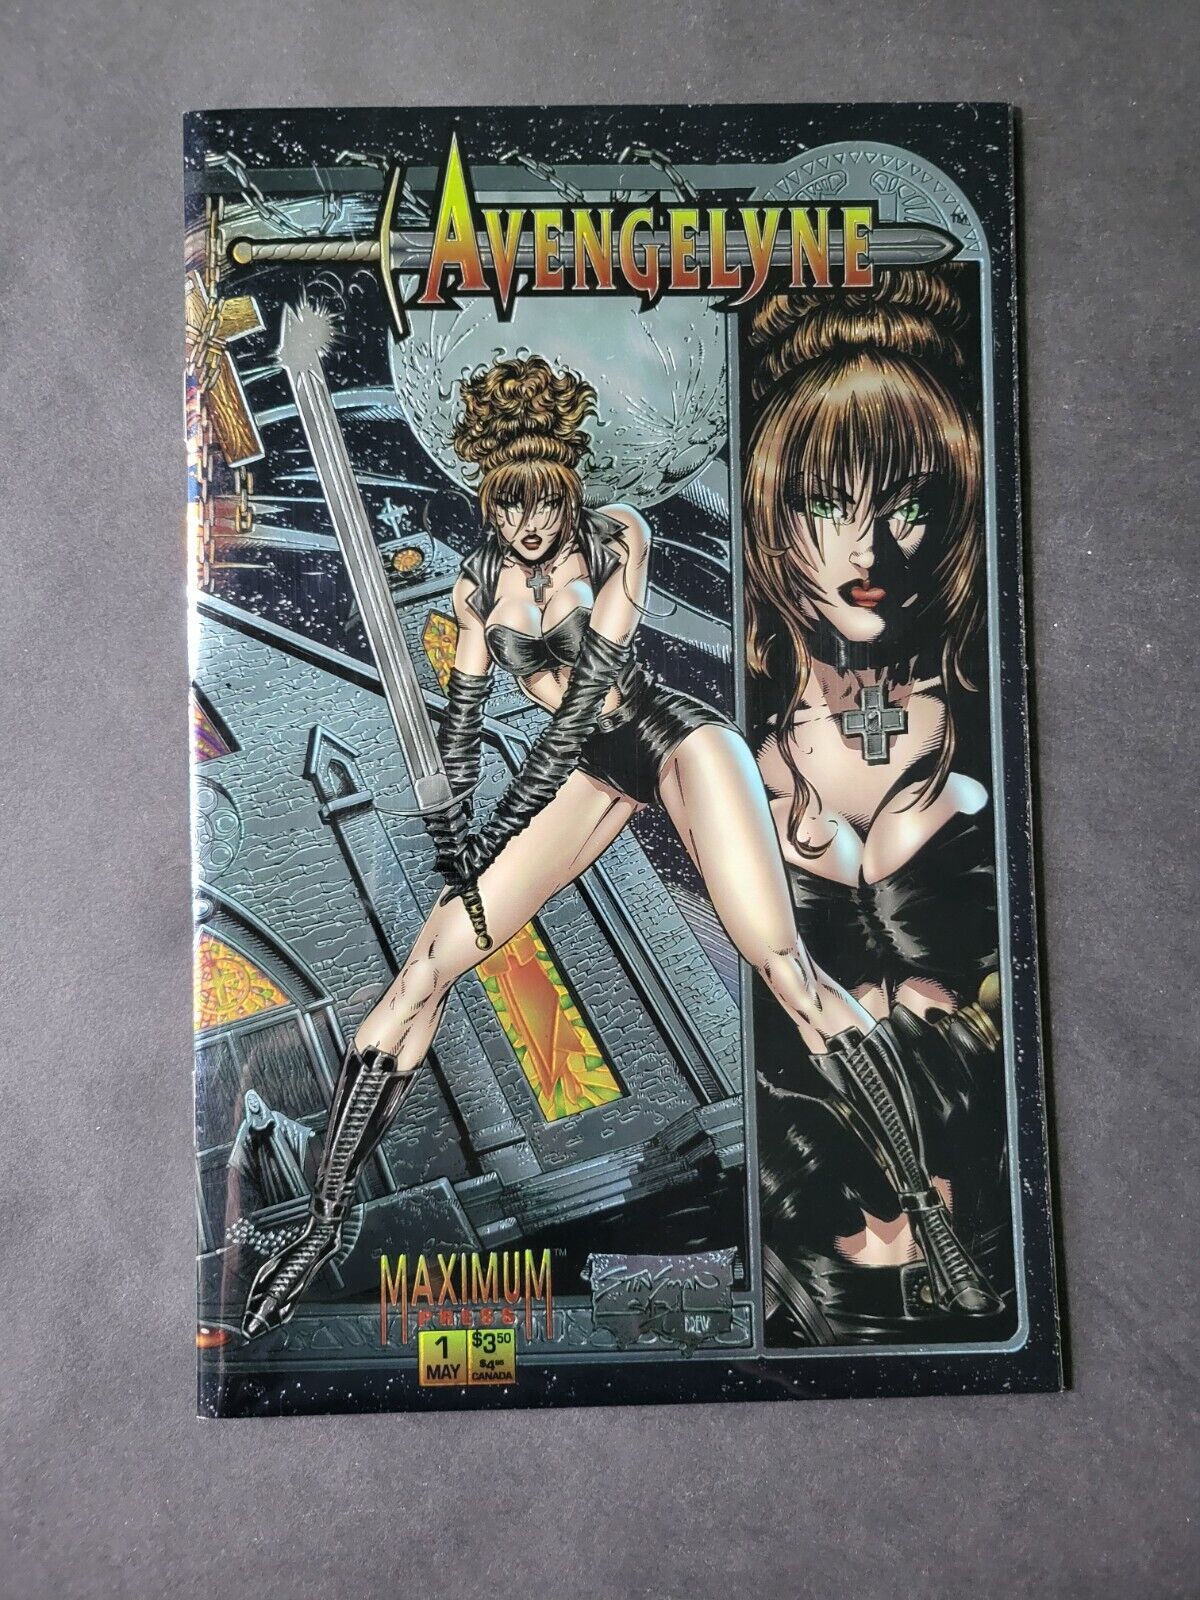 Avengelyne #1 (1995) Chromium Foil Cover With Poster 1st App Of Avengelyne 